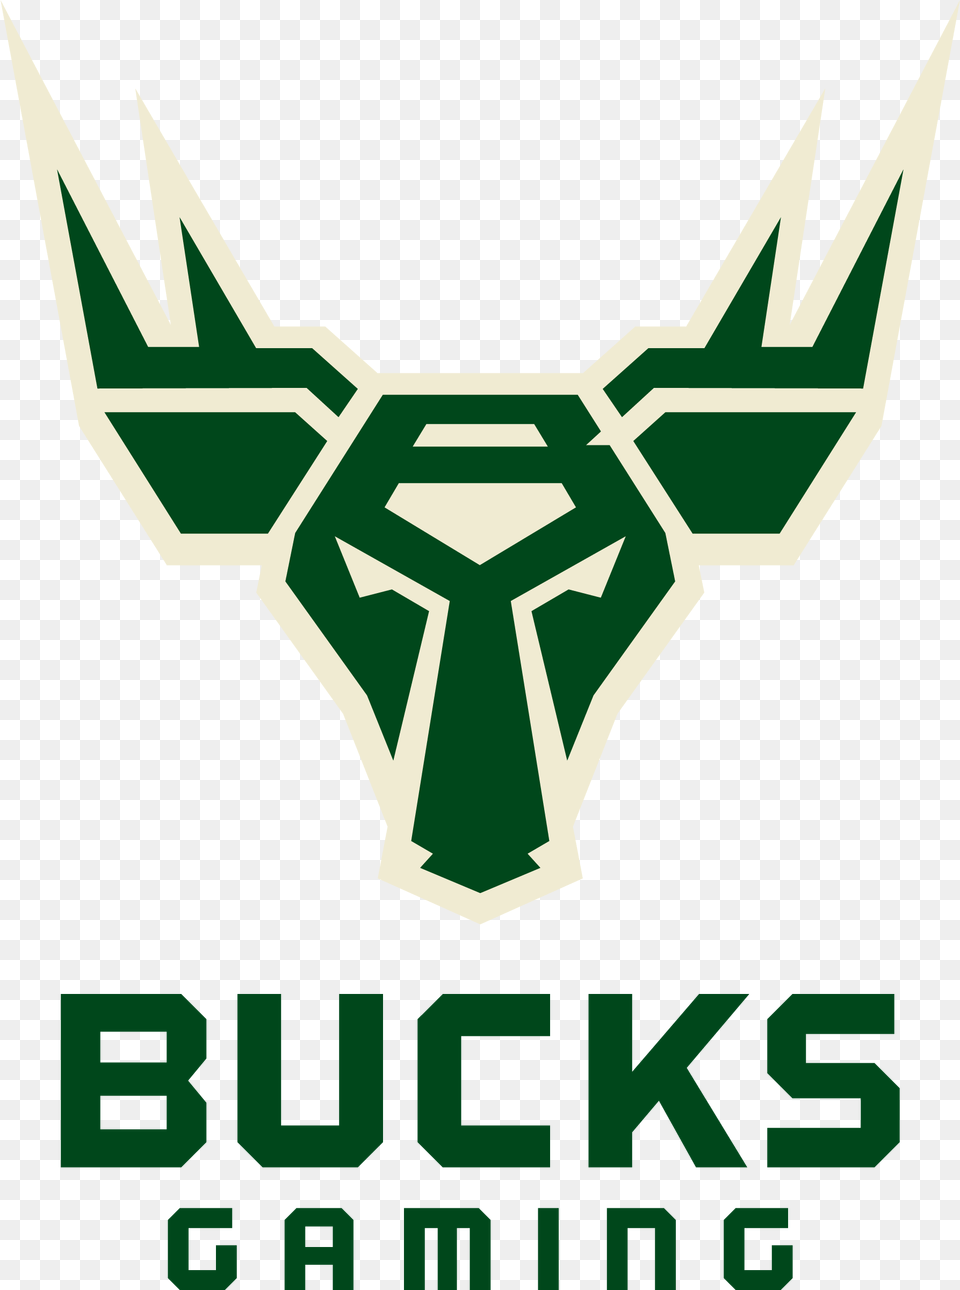 Download Bucks Gaming Logo Image Bucks Gaming Logo, Scoreboard, Dynamite, Weapon, Symbol Png